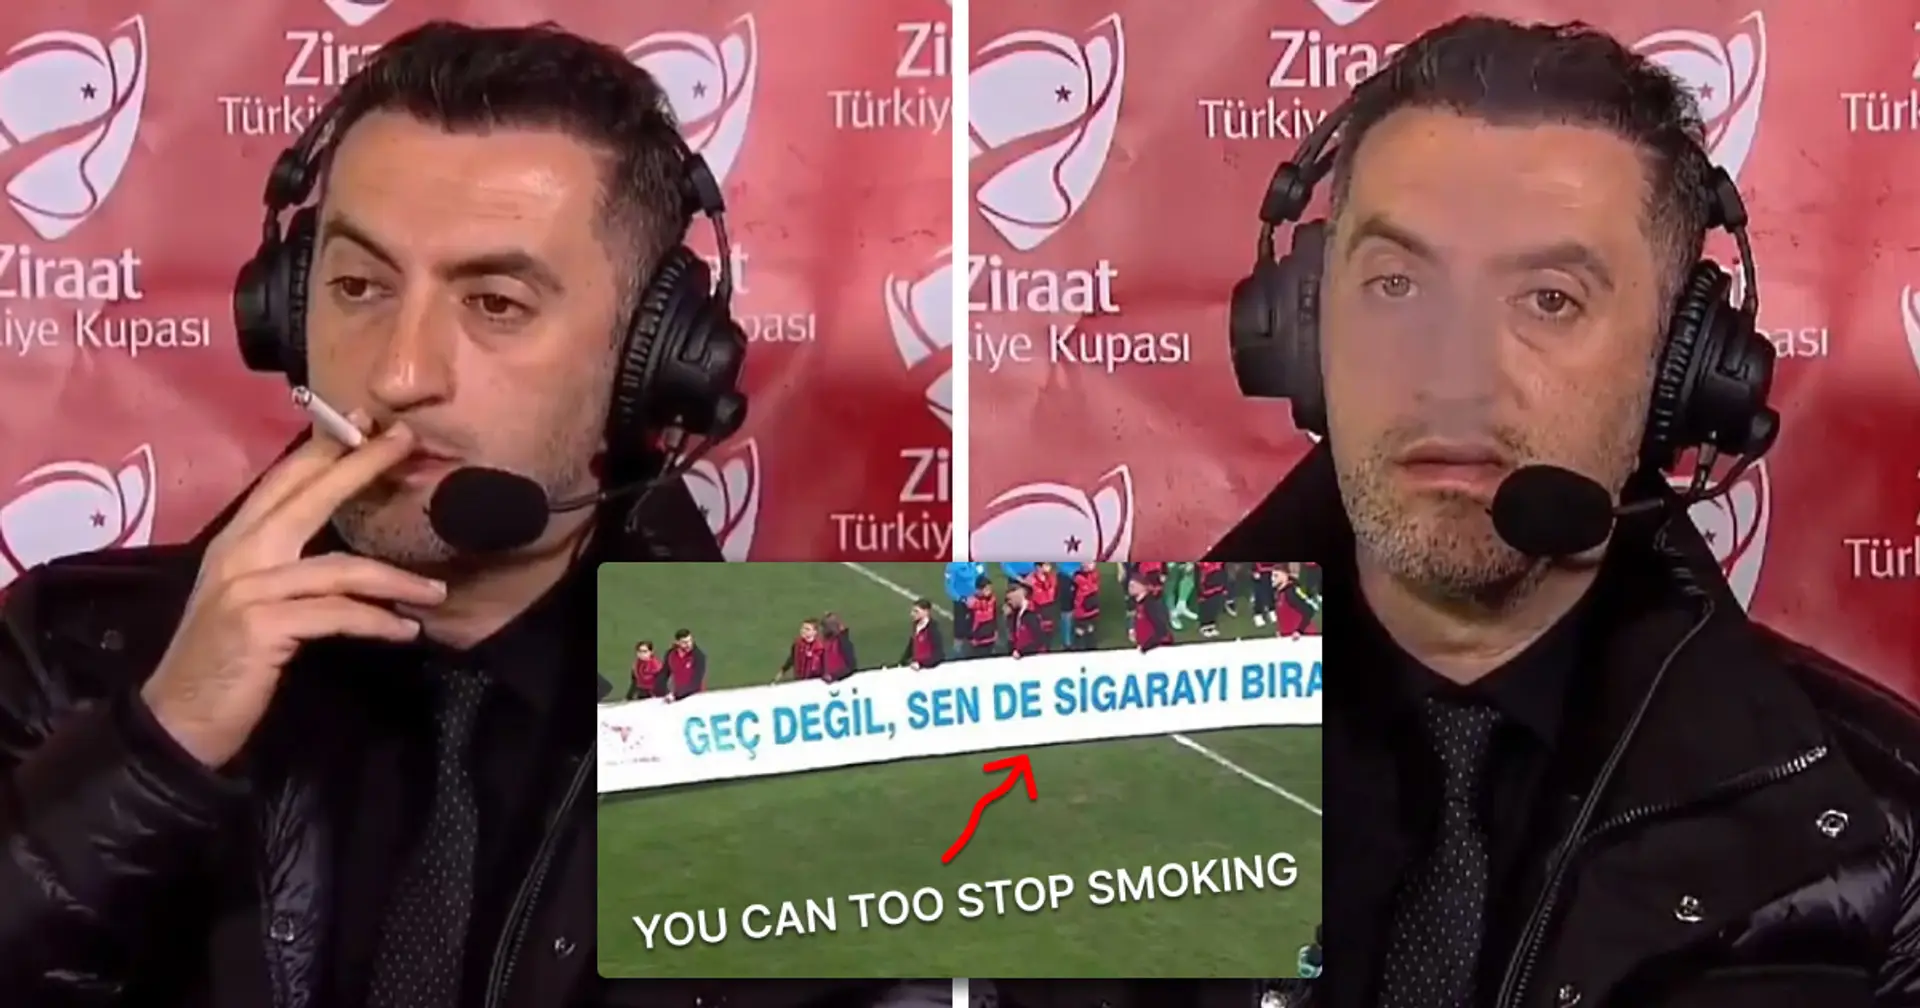 Türkischer Kommentator beim Rauchen im Live-Fernsehen erwischt, während ironischer Spruch auf dem Bildschirm gezeigt wird